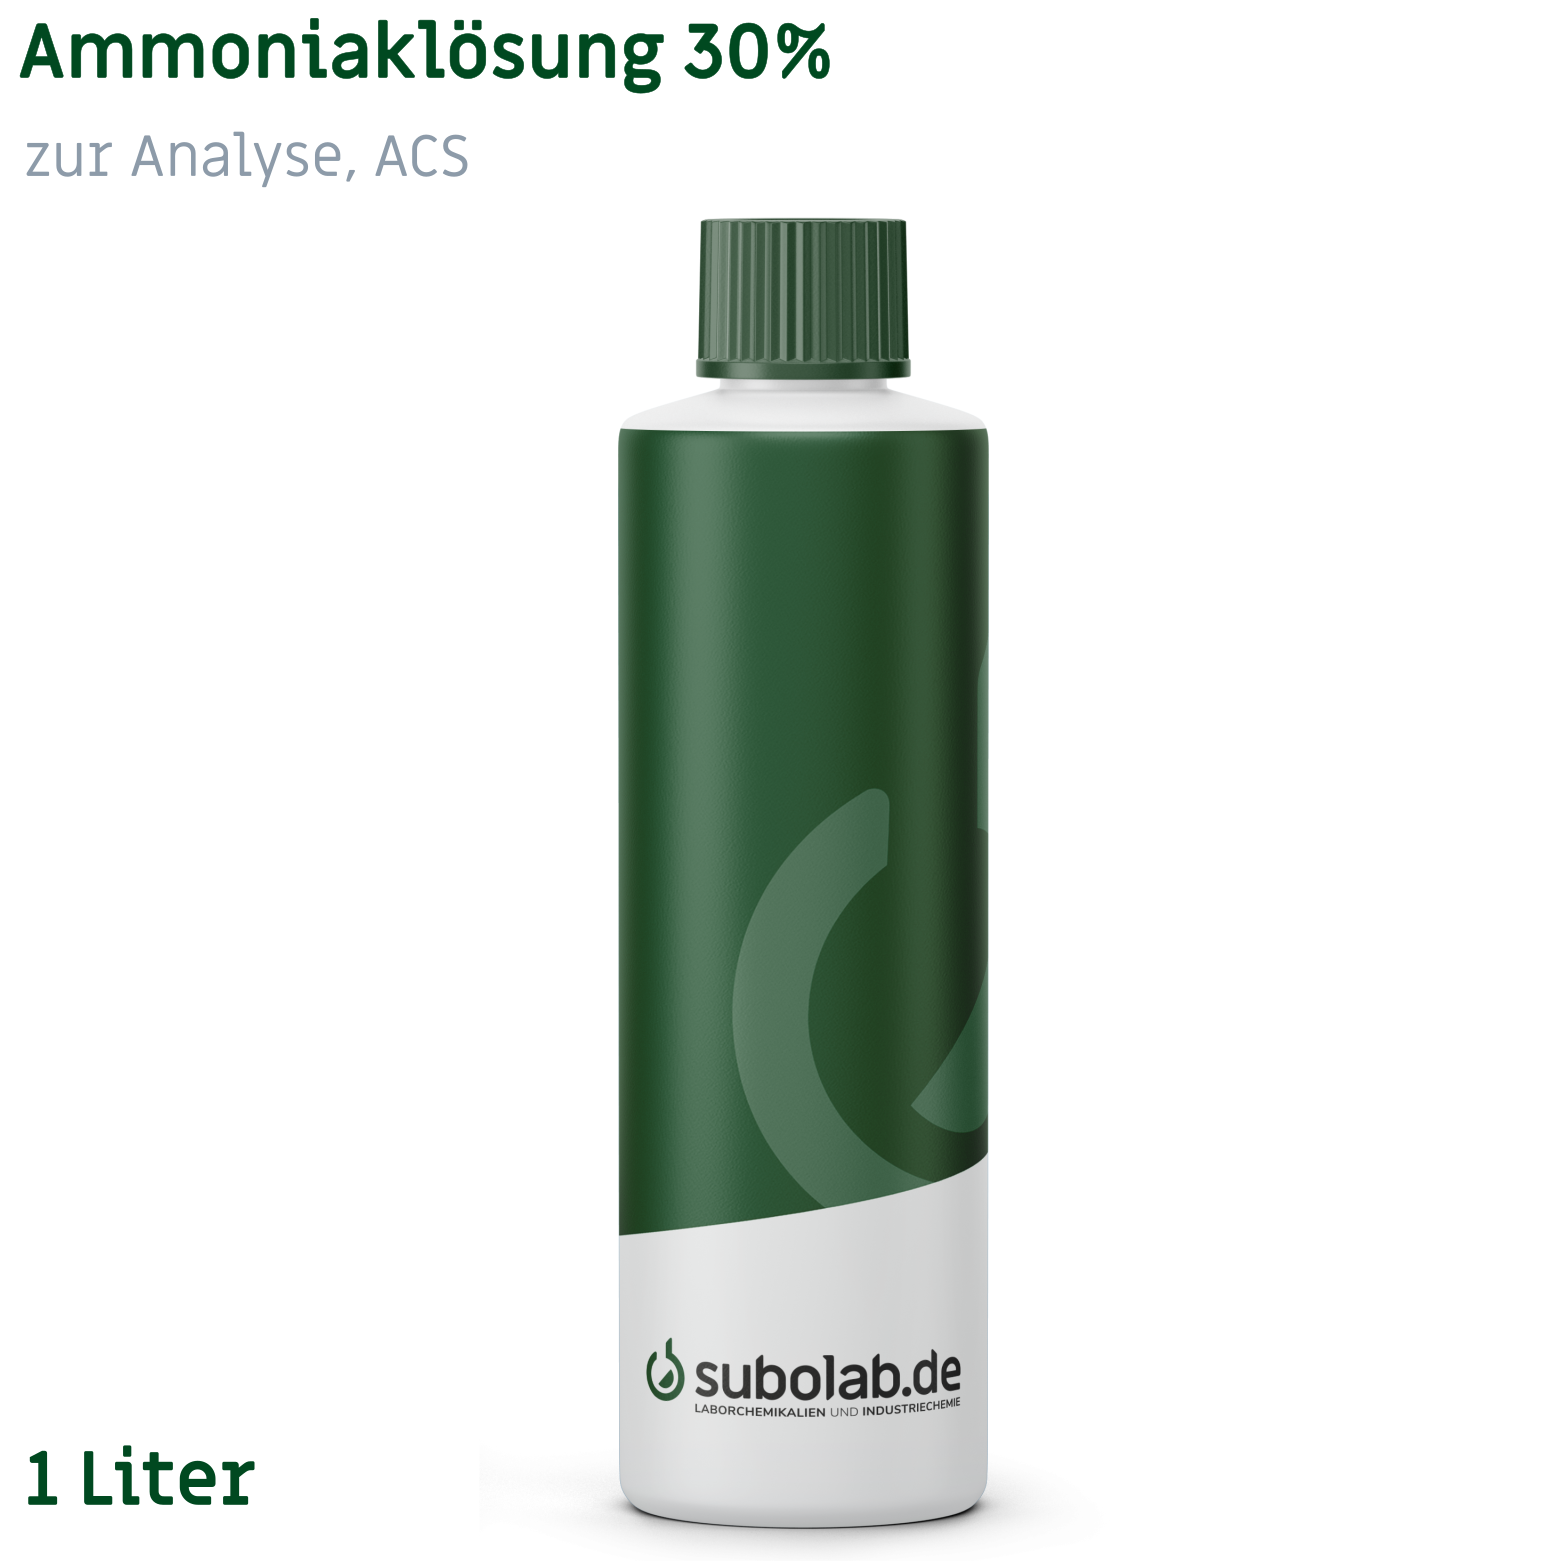 Bild von Ammoniaklösung 30% zur Analyse, ACS (1 Liter)